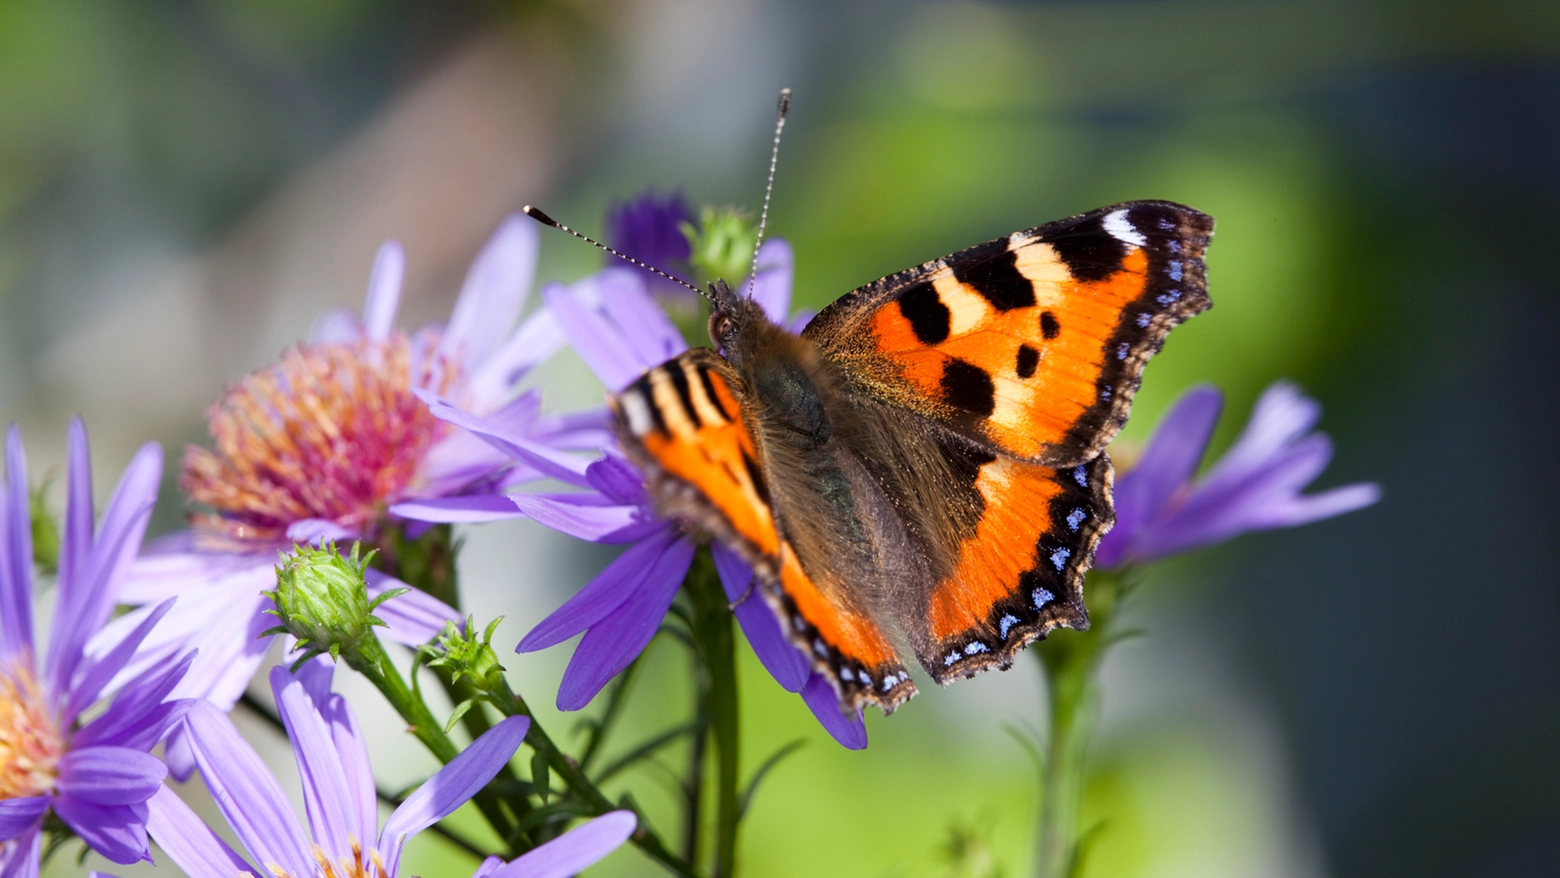 L’osservazione delle farfalle richiede tempo, attenzione, ritmi lenti e capacità mnemonica